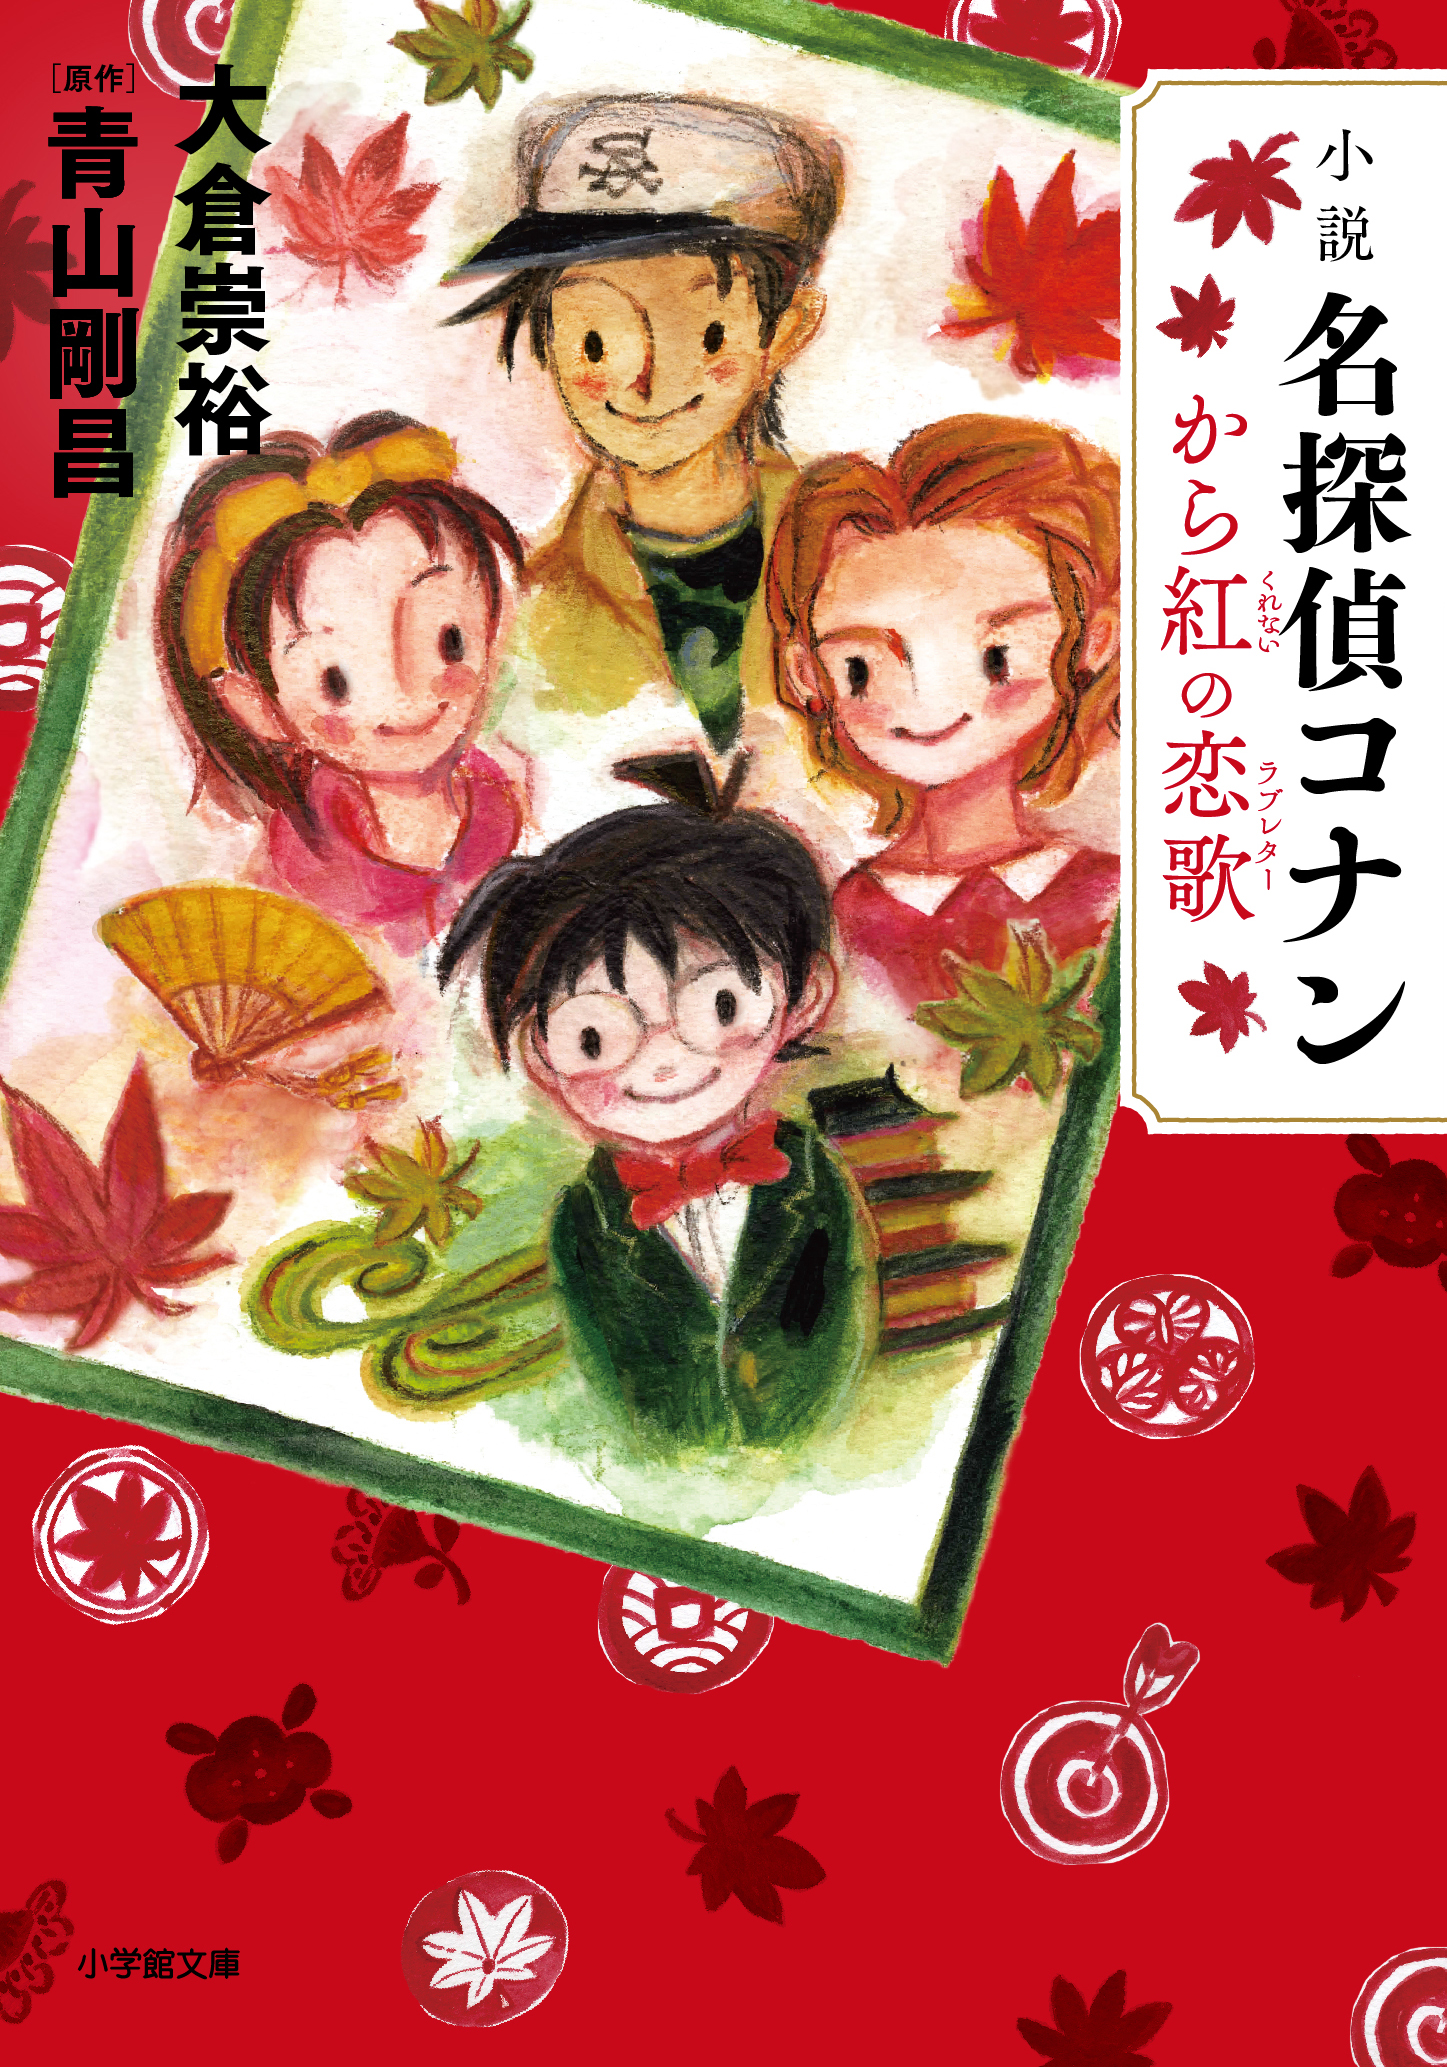 山田詩子が描き下ろし 小説 名探偵コナン から紅の恋歌 ラブレター の発売決定 株式会社カレルチャペックのプレスリリース